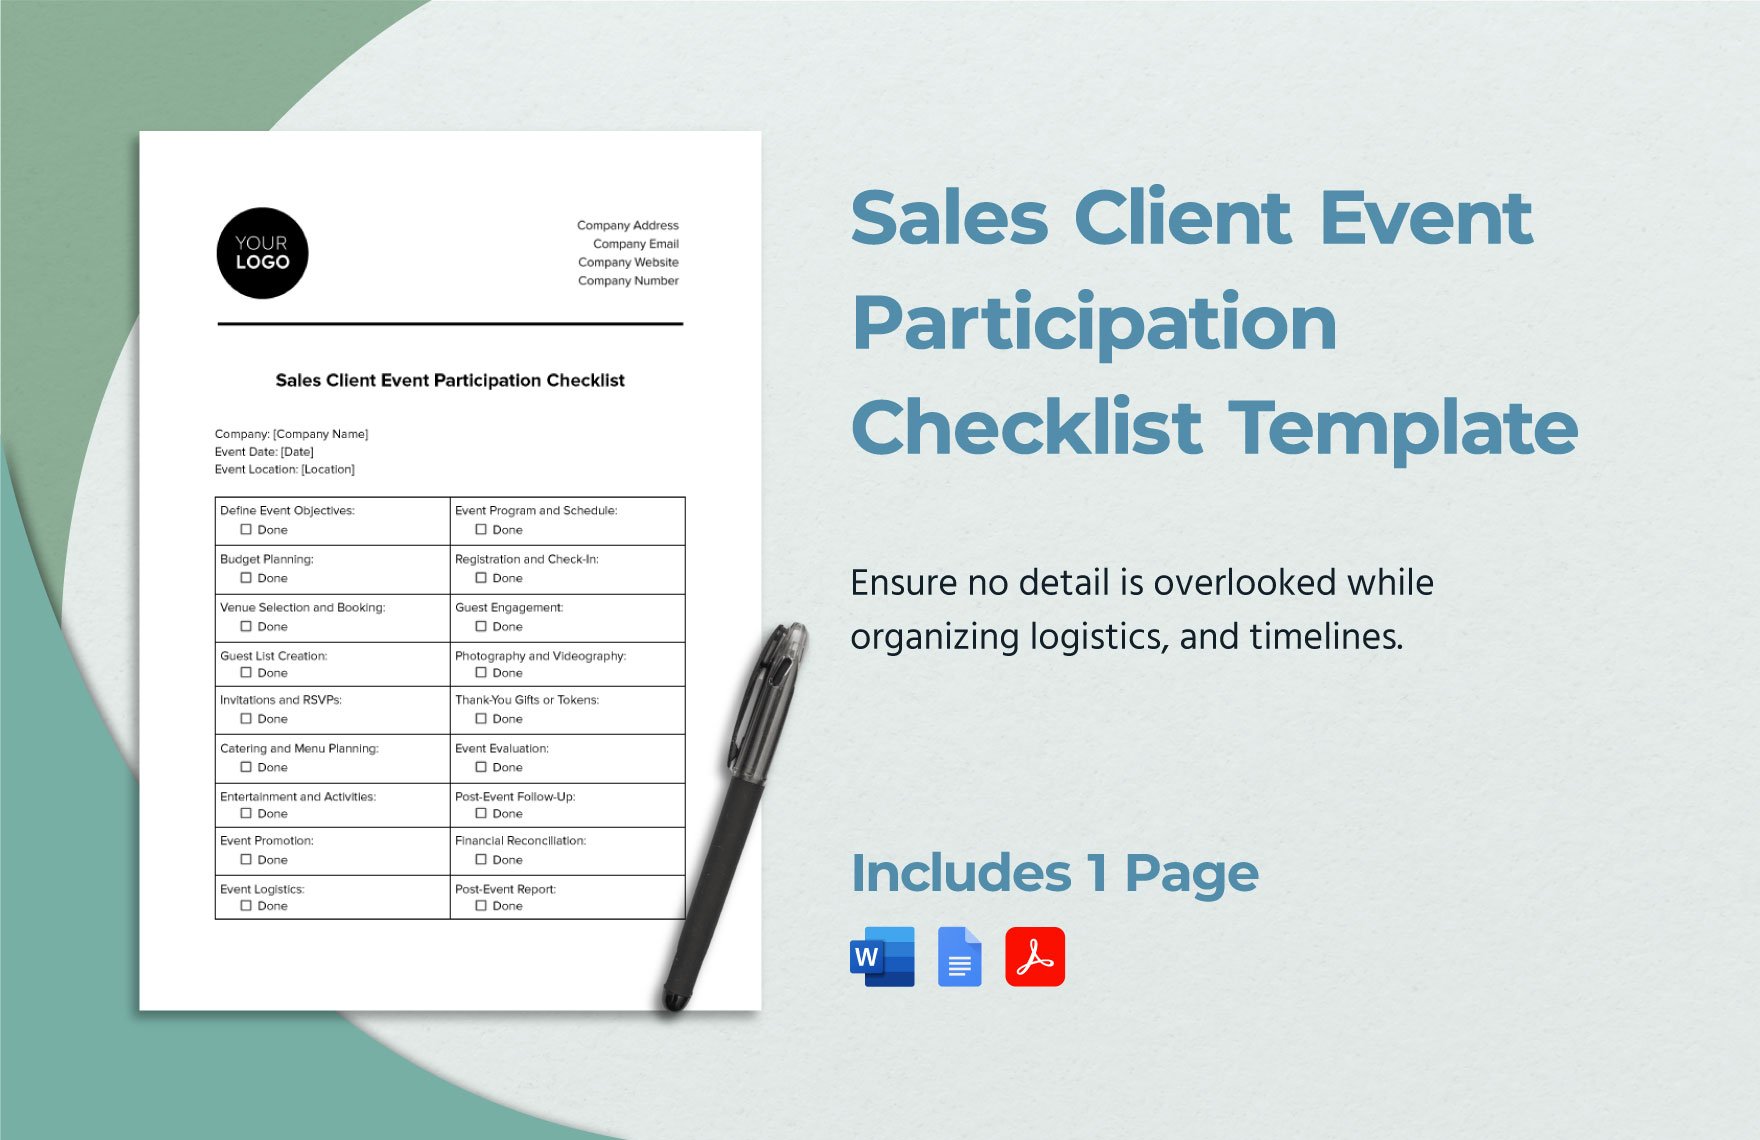 Sales Client Event Participation Checklist Template